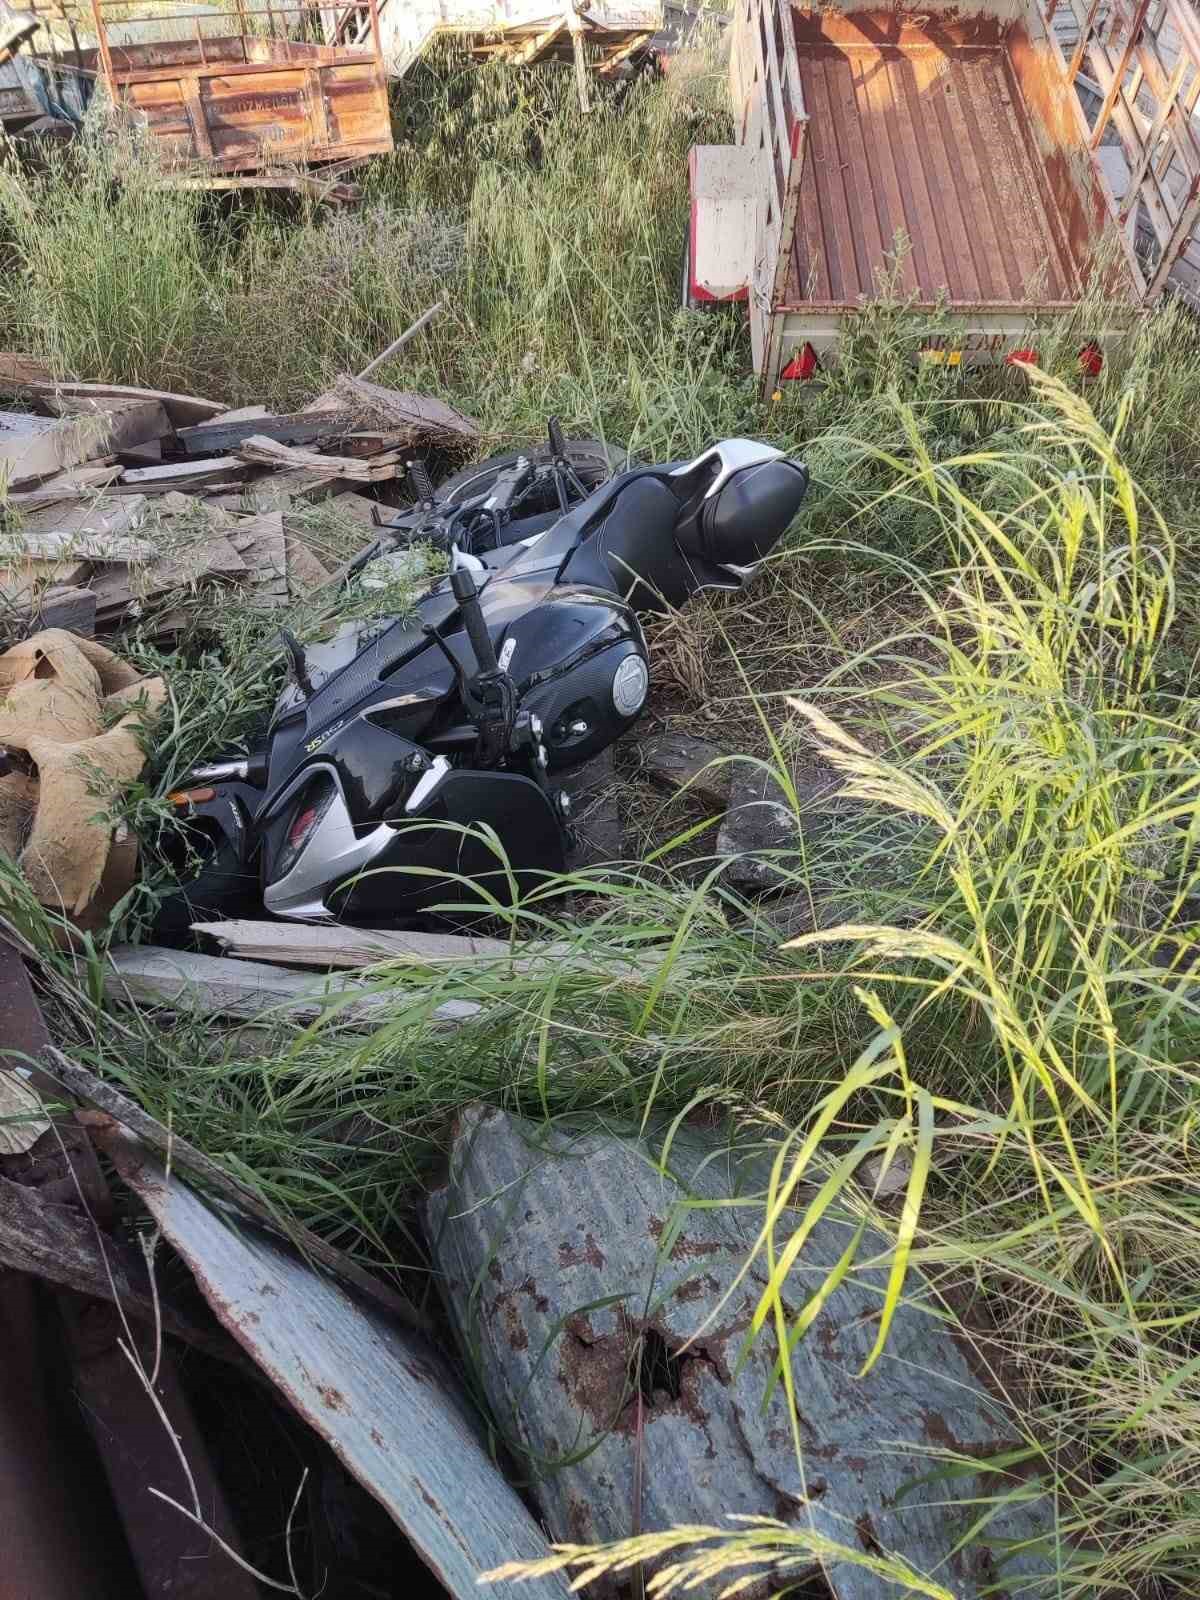 Kazada ağır yaralanan motosiklet sürücüsü yaşam mücadelesini kaybetti
